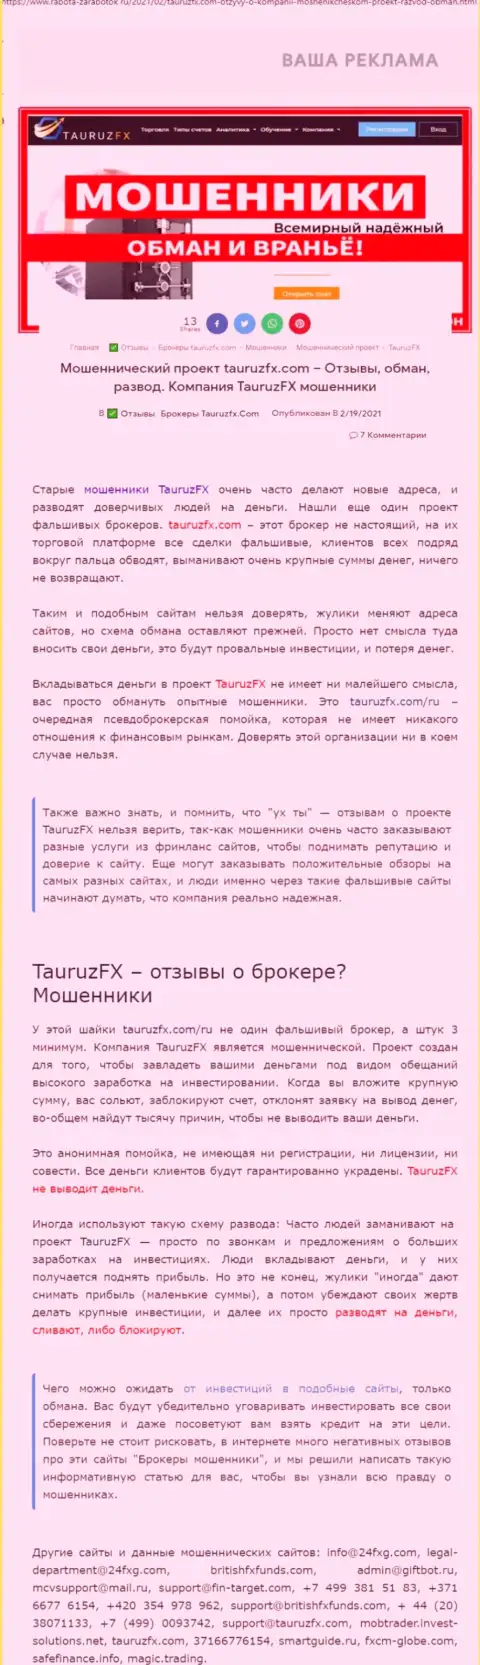 С конторой TauruzFX Com нереально заработать !!! Вложения присваивают  - это МОШЕННИКИ ! (статья с обзором)